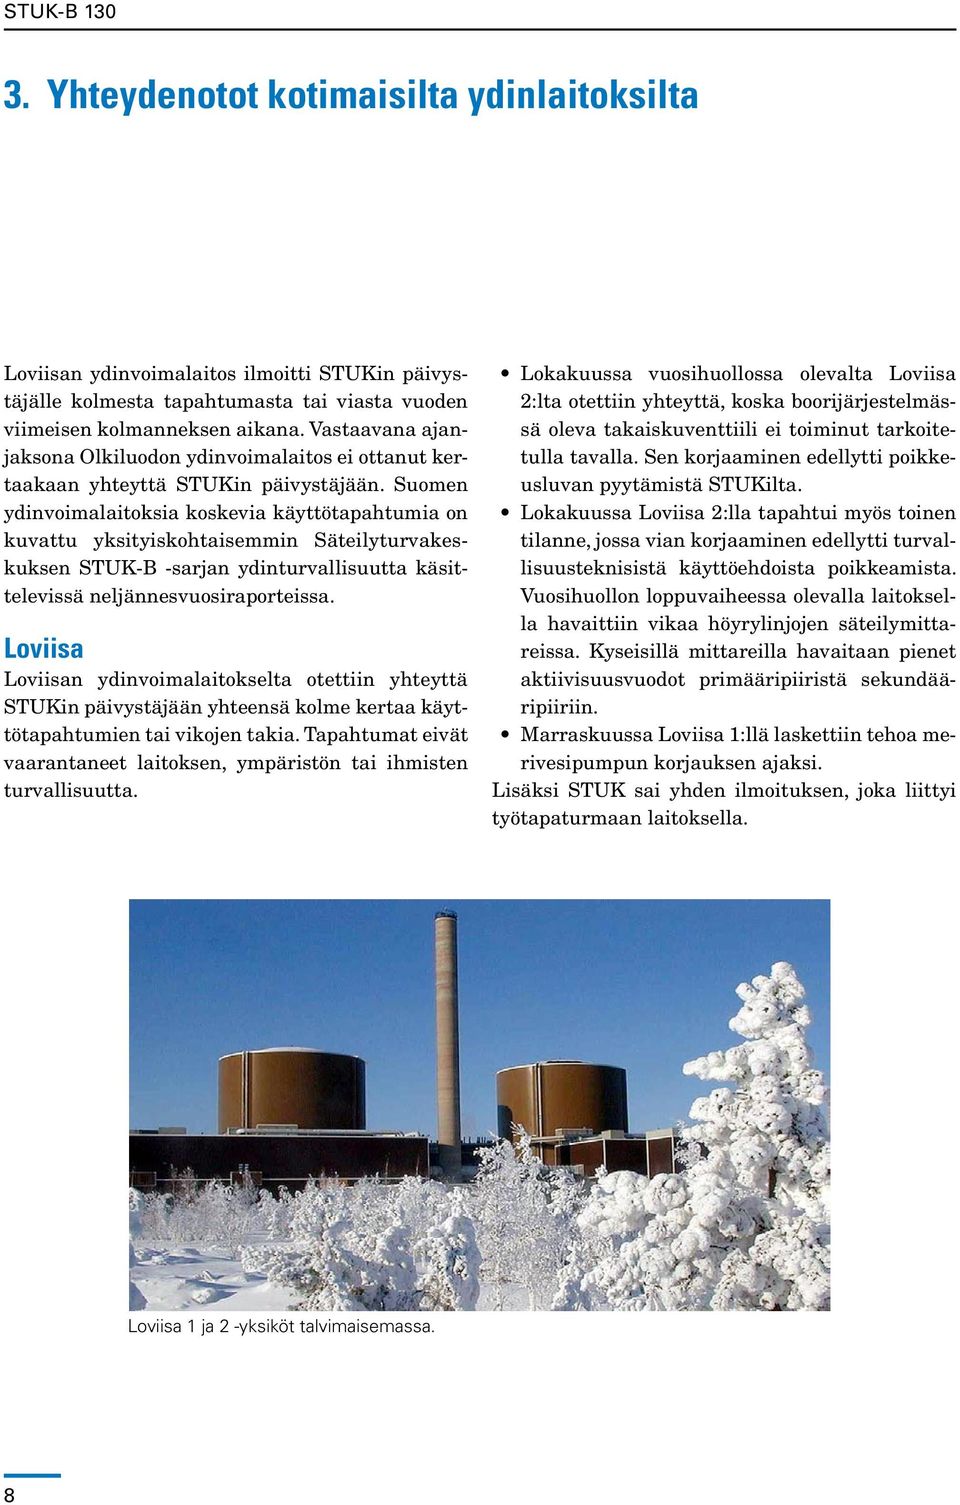 Suomen ydinvoimalaitoksia koskevia käyttötapahtumia on kuvattu yksityiskohtaisemmin Säteilyturvakeskuksen STUK-B -sarjan ydinturvallisuutta käsittelevissä neljännesvuosiraporteissa.